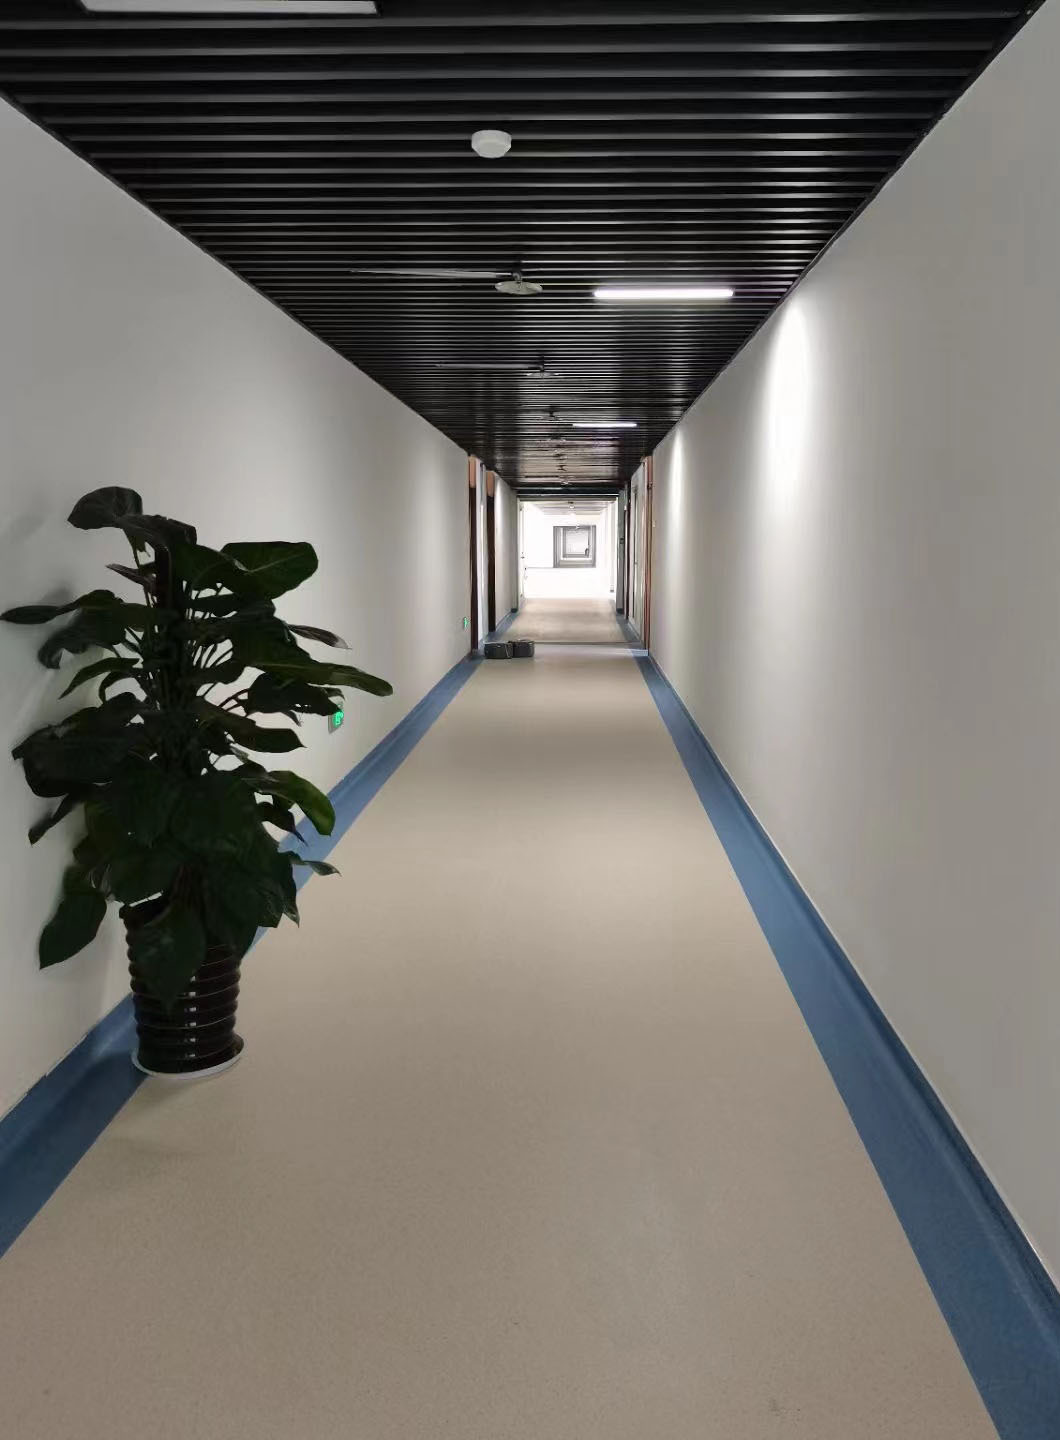 大巨龙pvc地板 展厅工厂地板胶 办公室塑胶地板 学校地板革 发布5 2m*